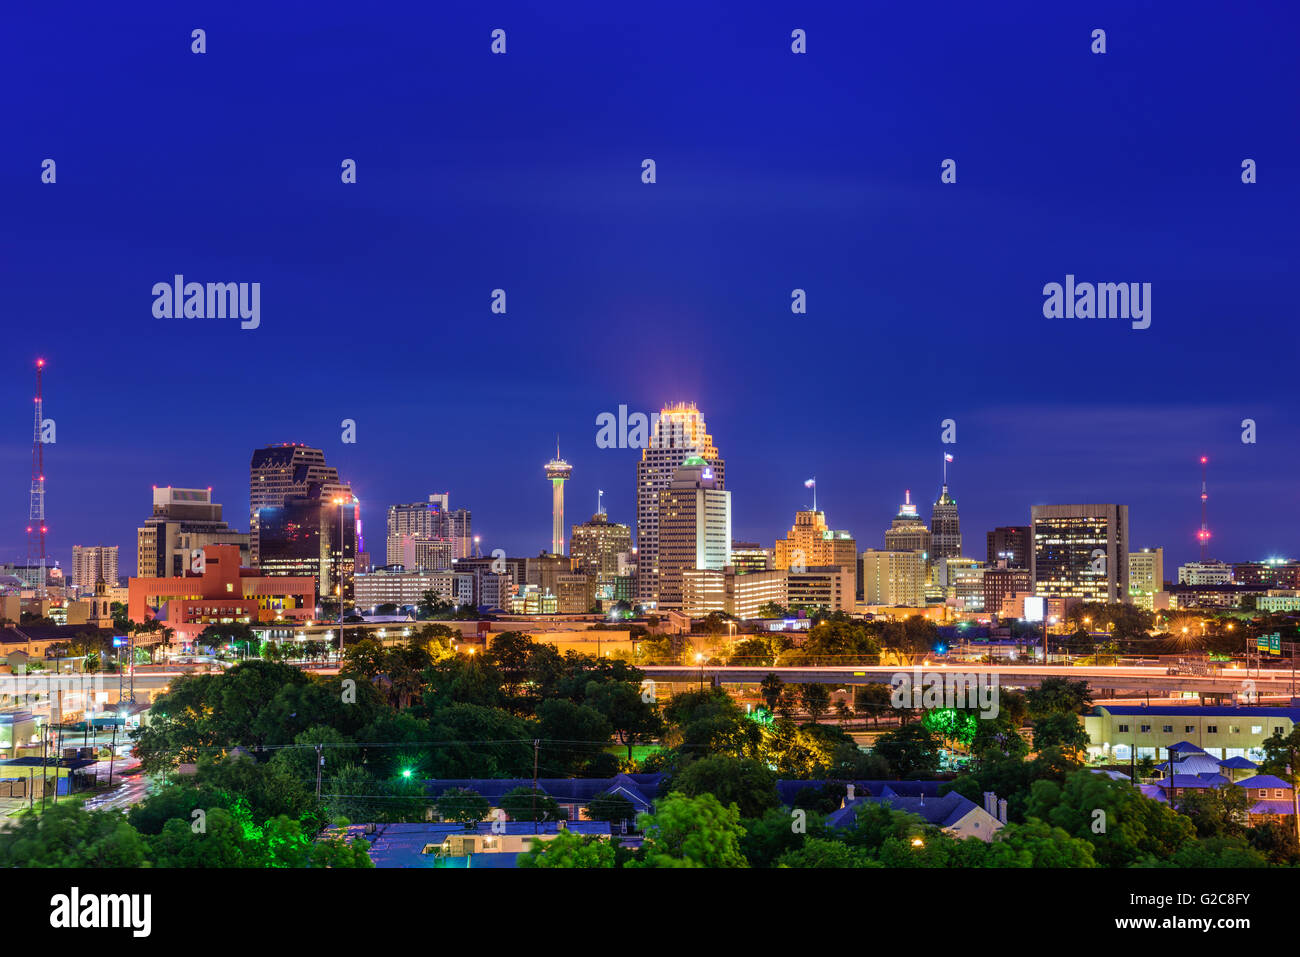 San Antonio, Texas, USA skyline. Stock Photo